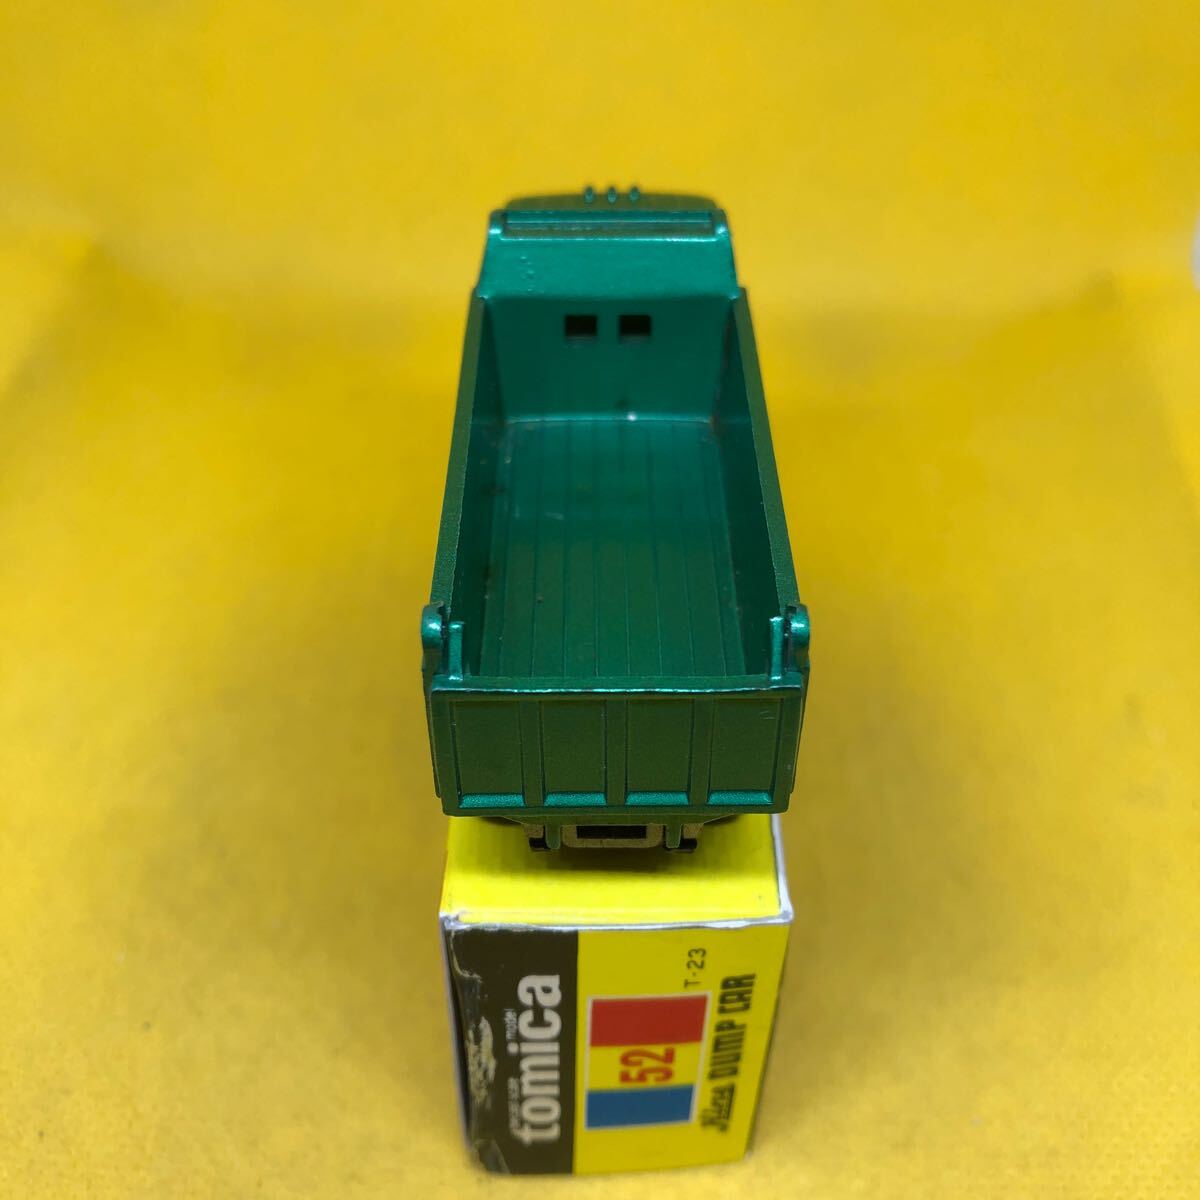 トミカ　日本製　黒箱　52 日野　ダンプカー　当時物　絶版